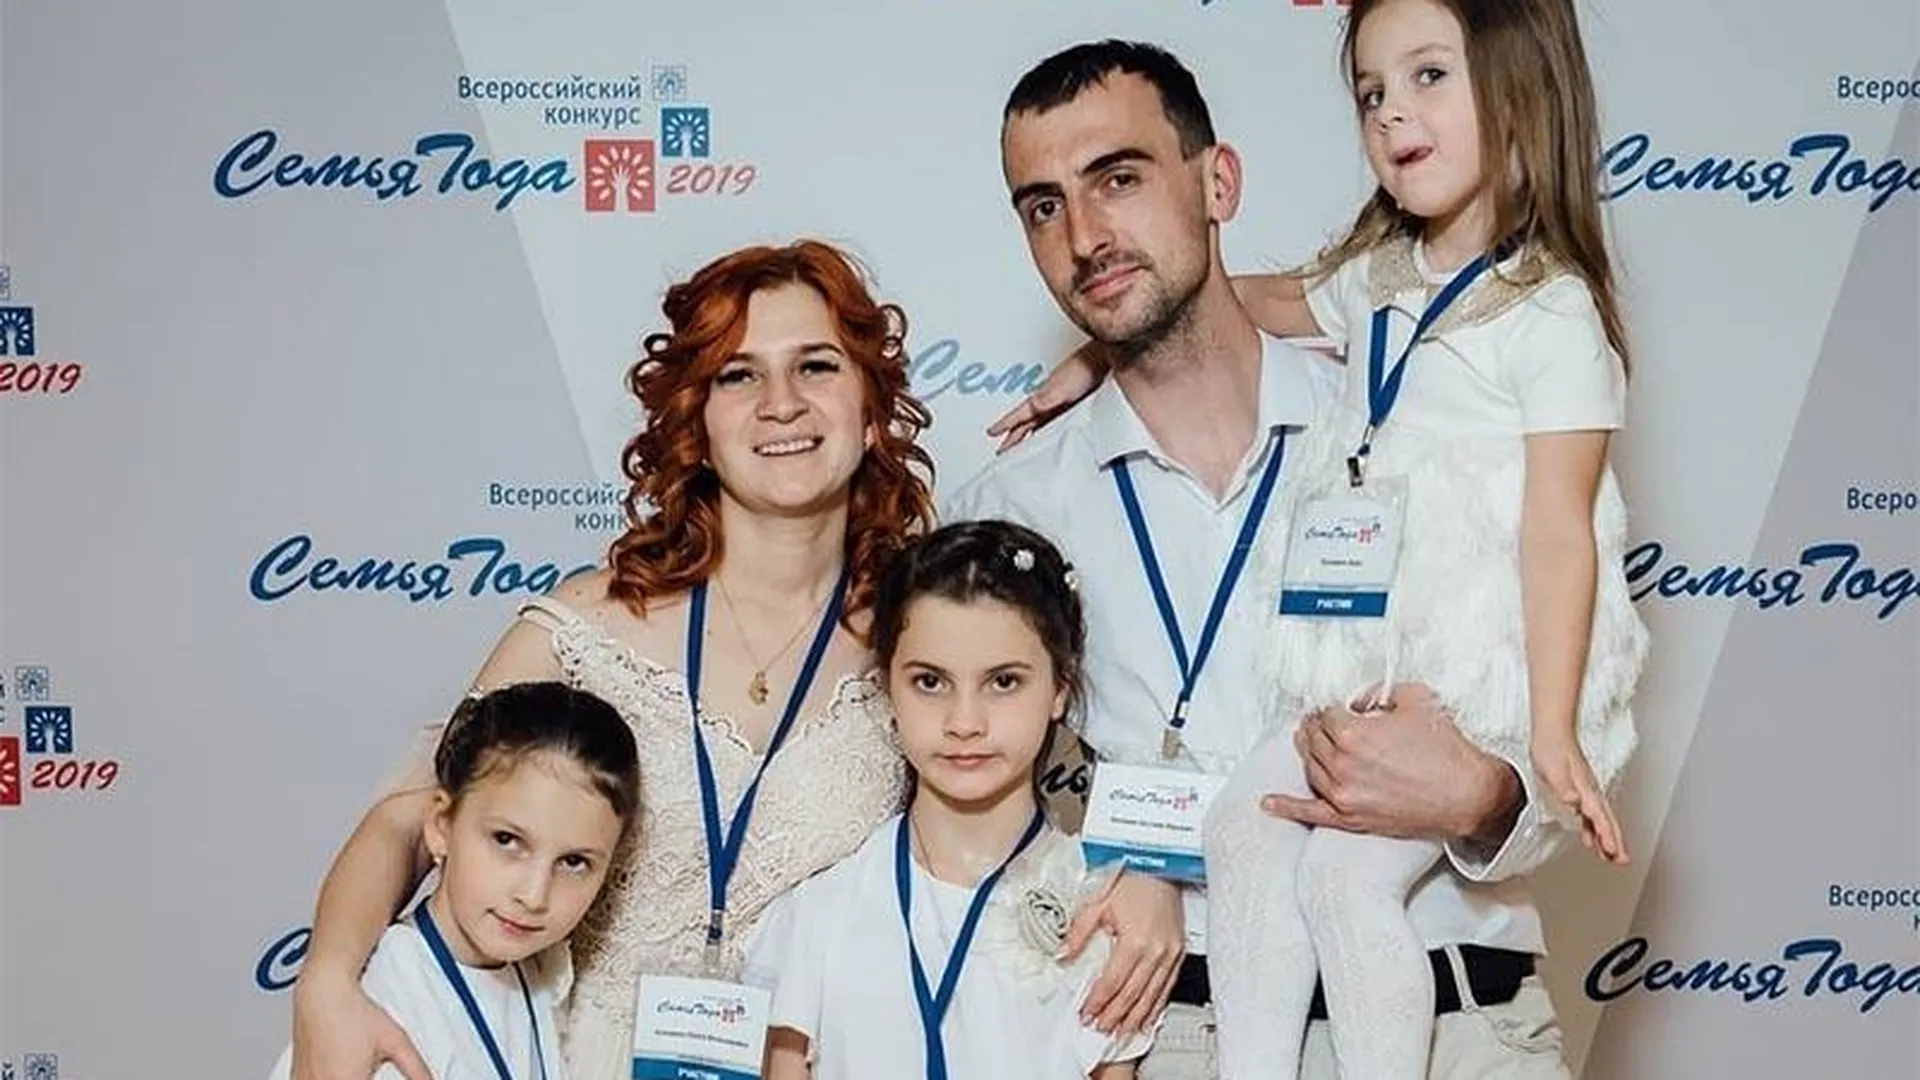 Молодая пара из Клина стала лучшей семьей в России благодаря социальным сетям